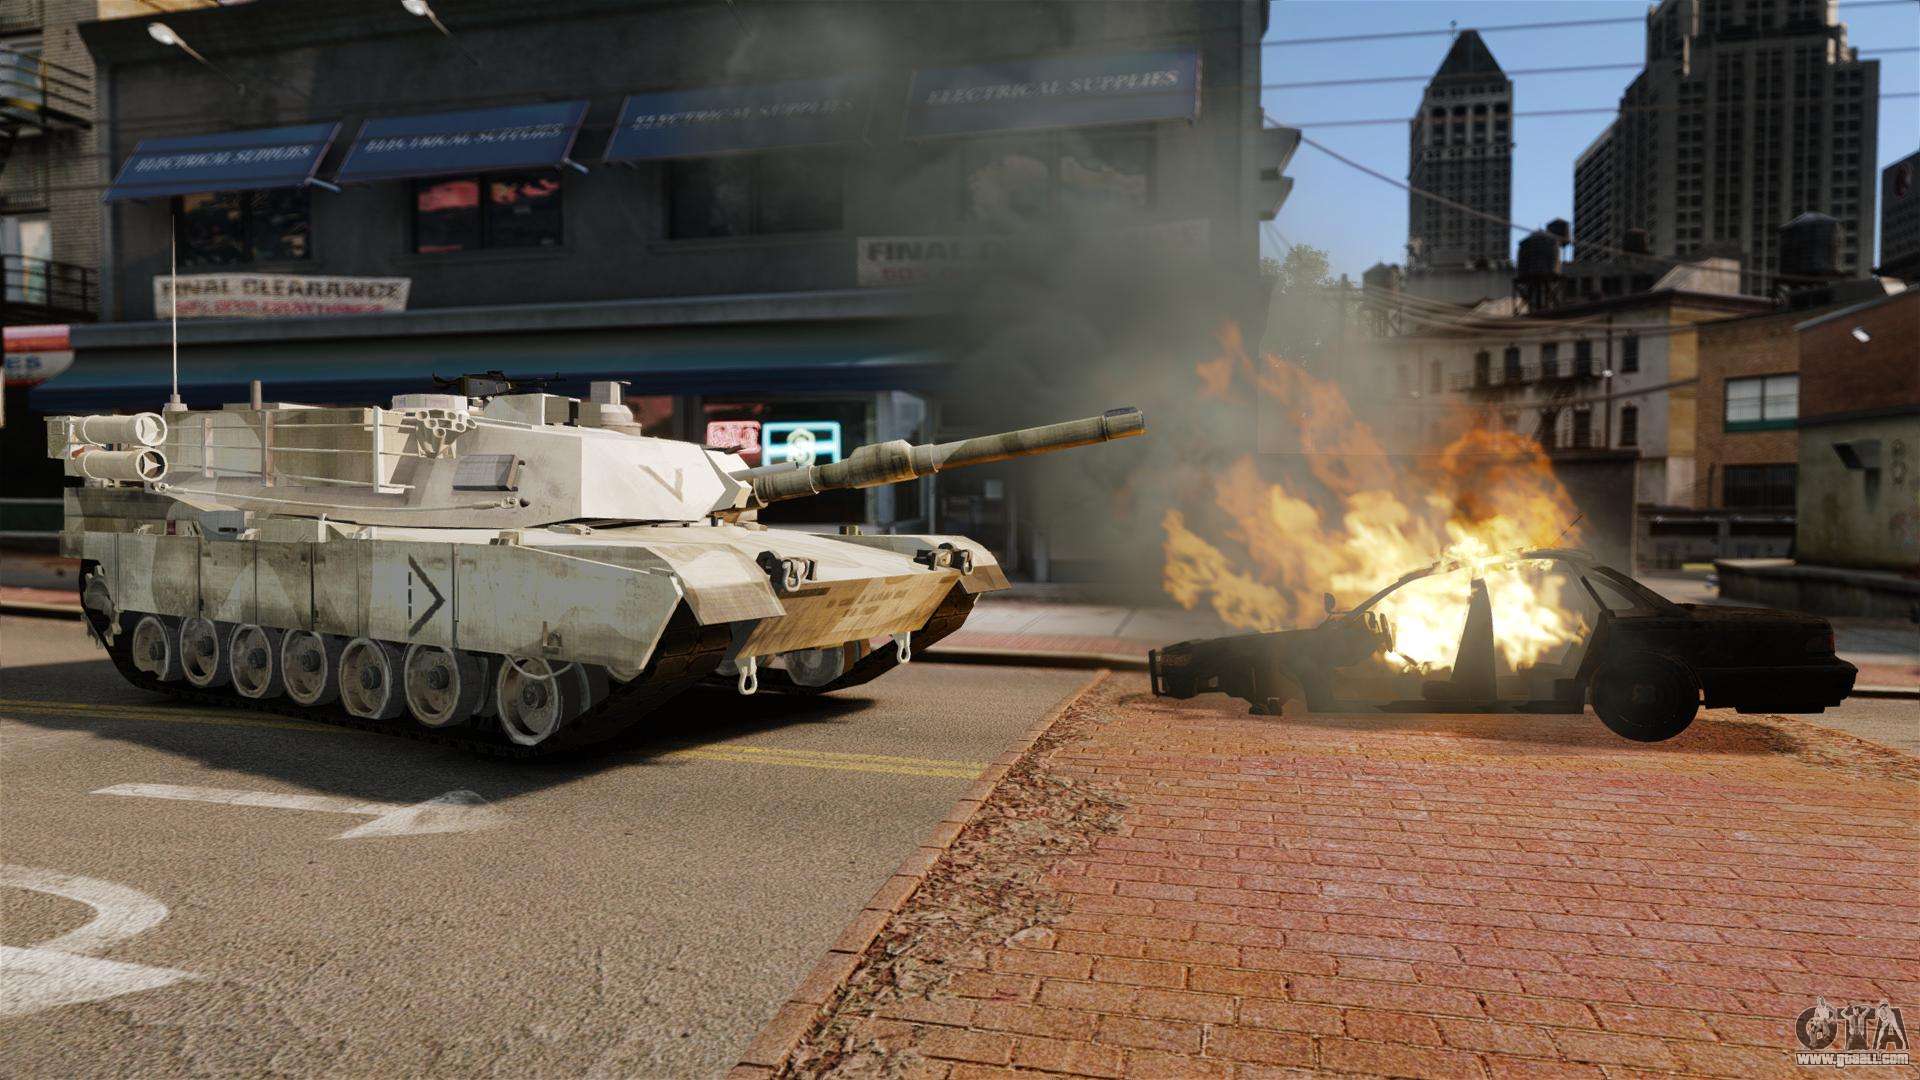 Script Tank V Style for GTA 4